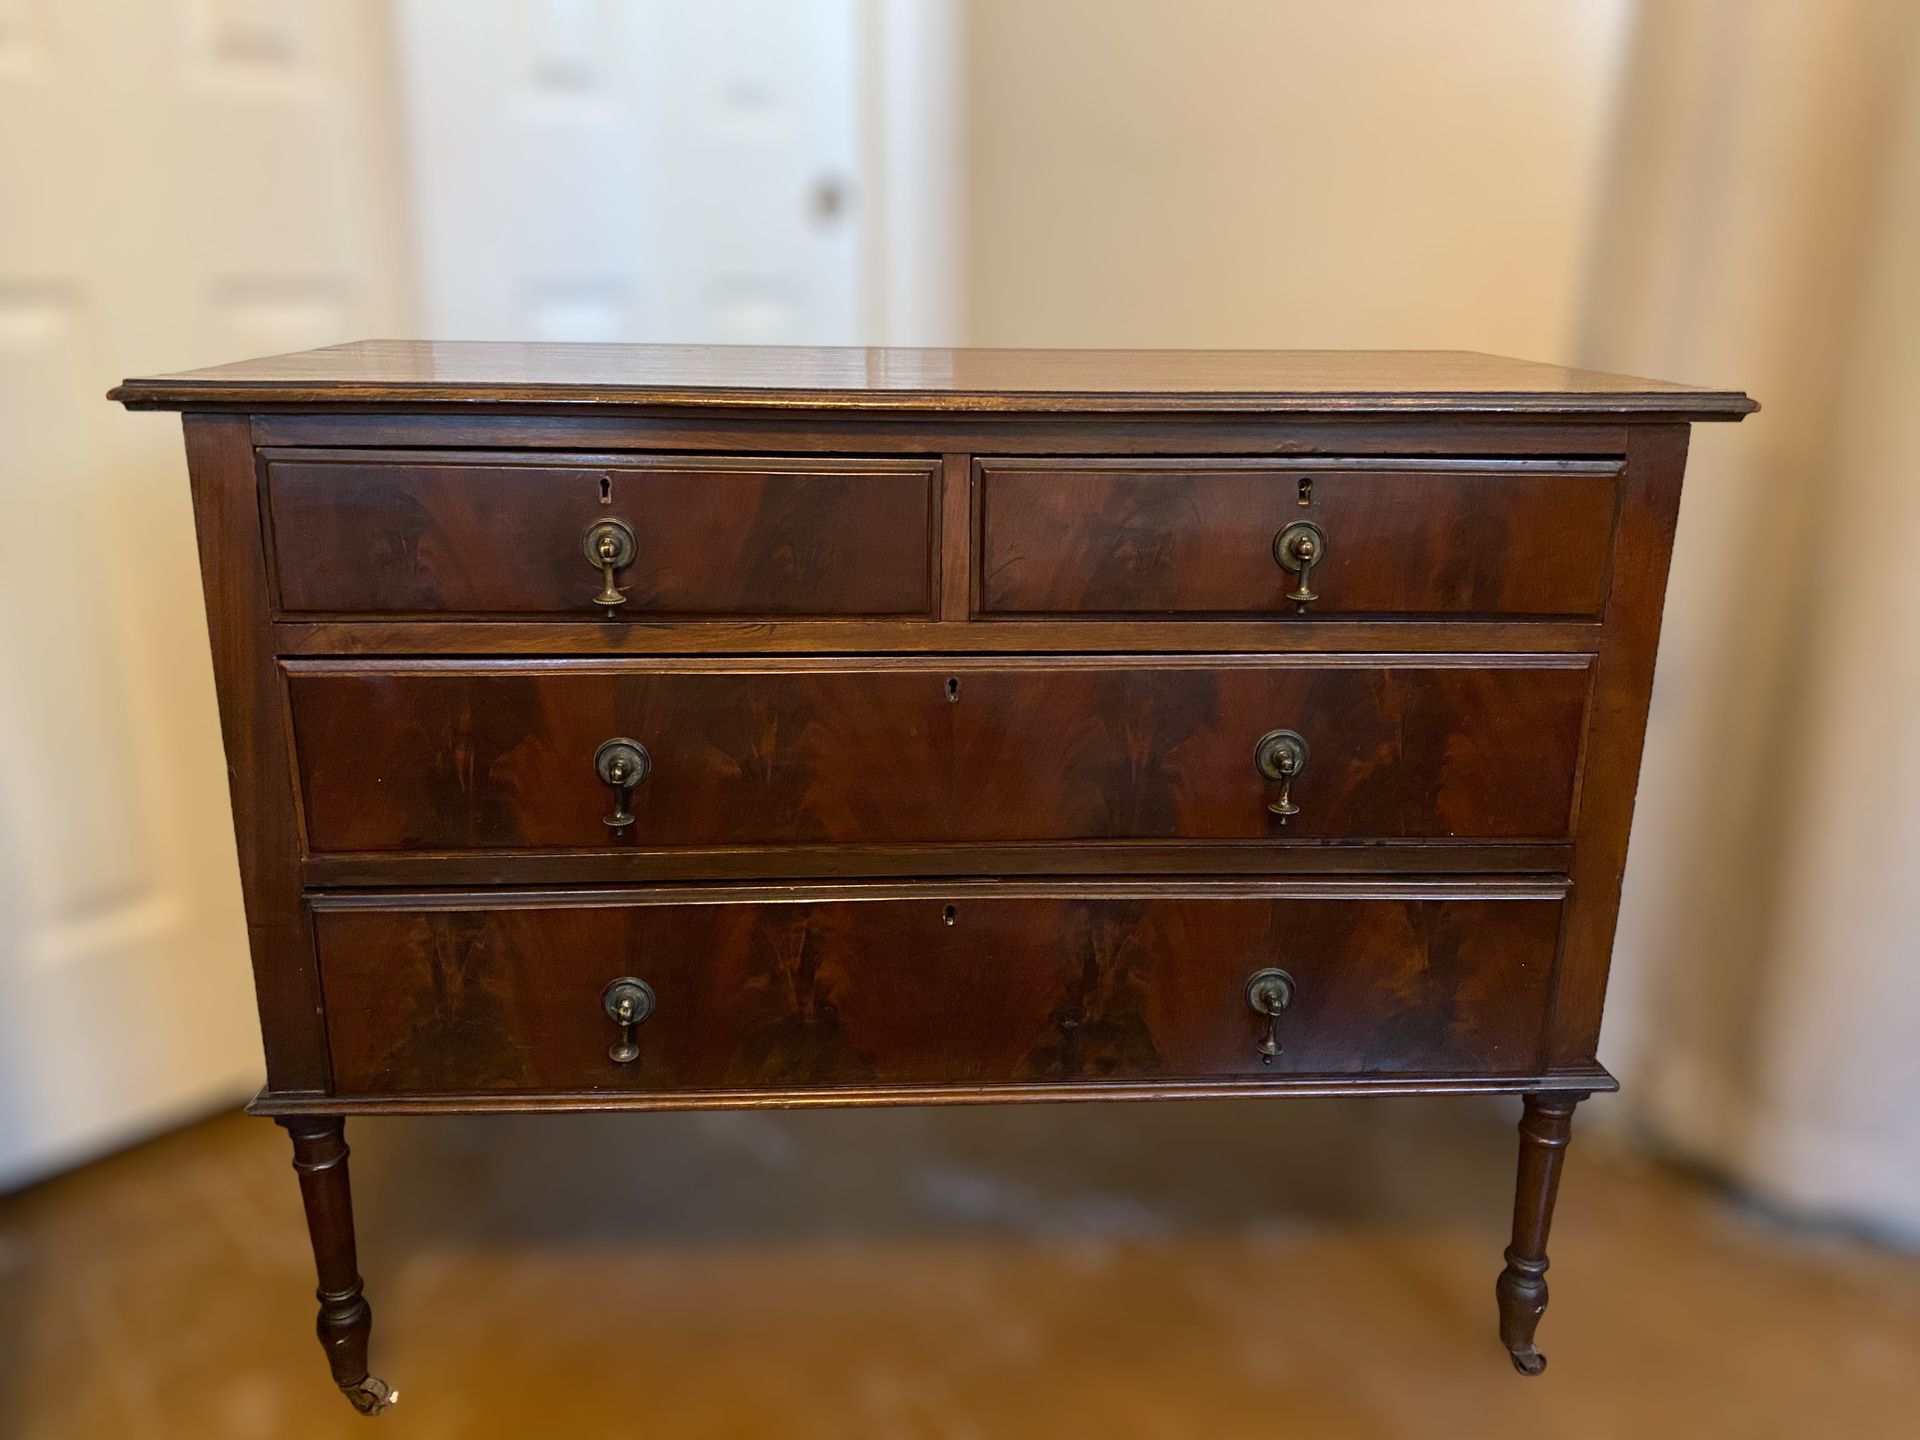 Antique Dresser Wooden Dresser In Original Condition